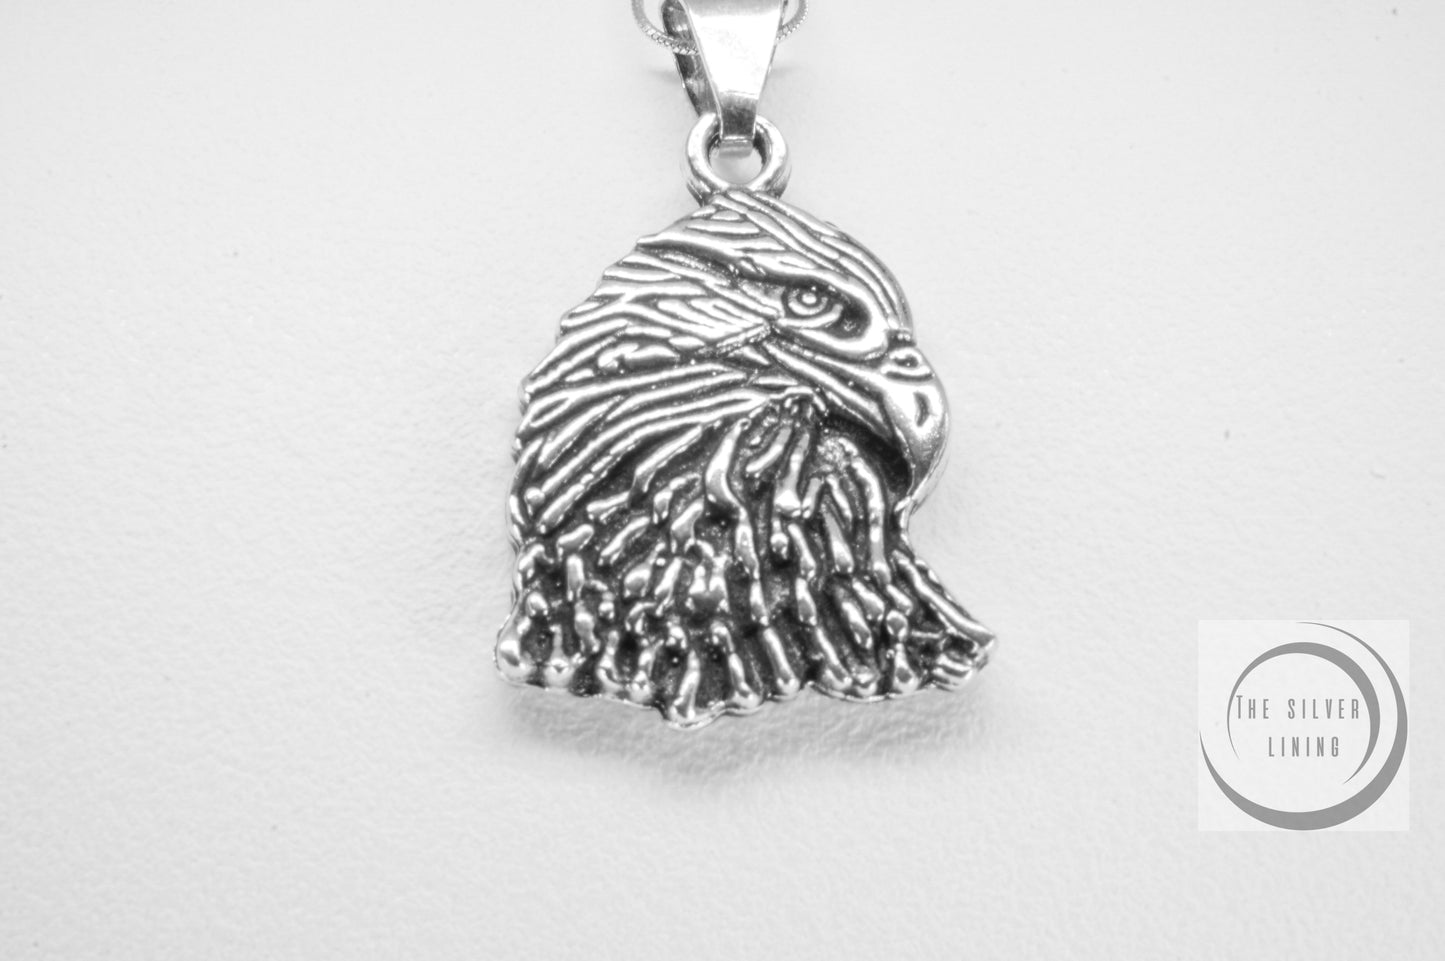 Dije de plata 925, Águila calva con cadena incluída